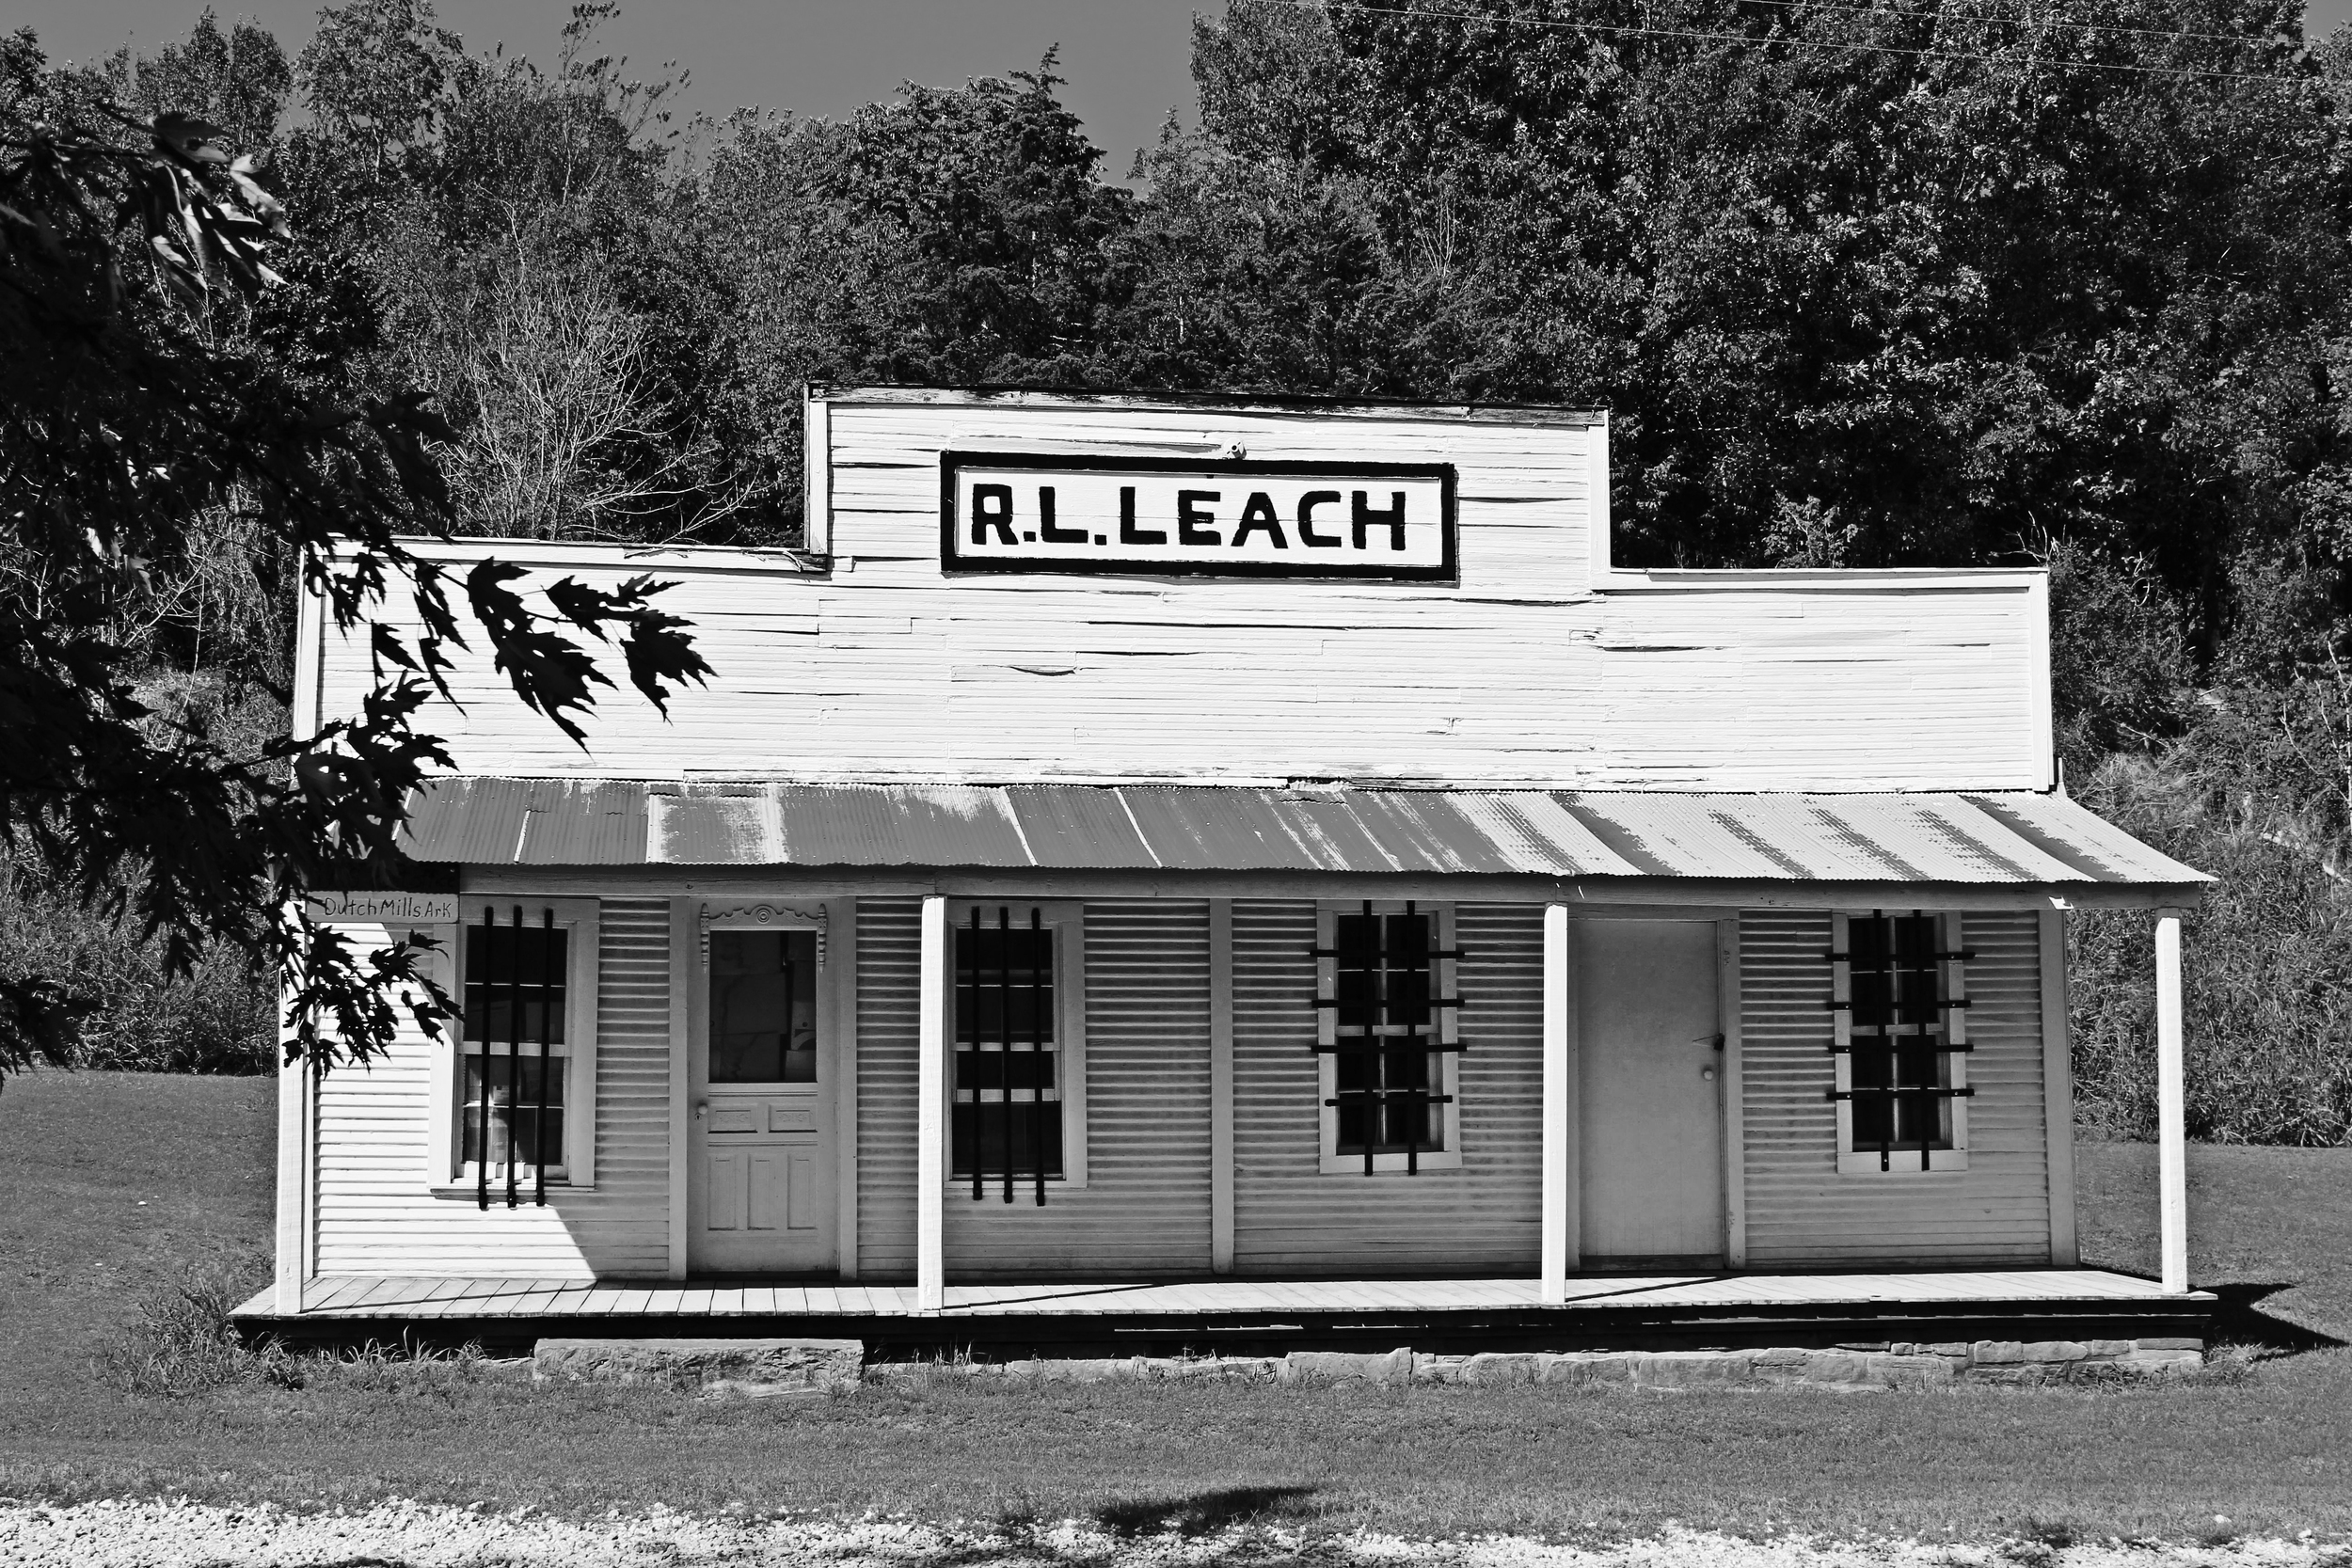  R.L. Leach Grocery, 2013. Dutch Mills, Washington County, AR. B&amp;W HDR digital image. 